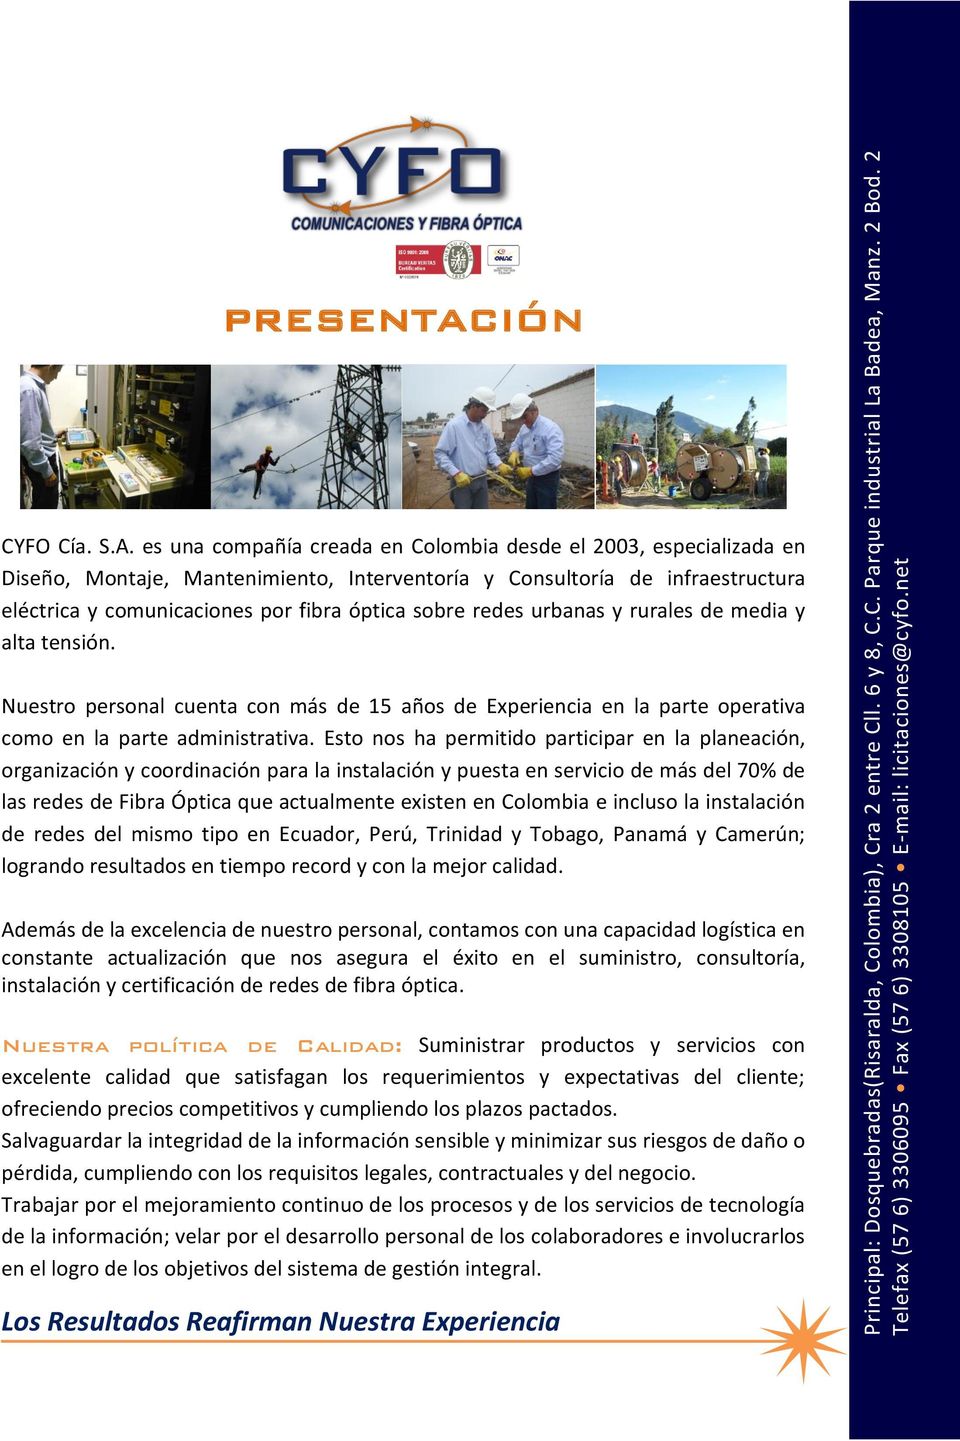 es una compañía creada en Colombia desde el 2003, especializada en Diseño, Montaje, Mantenimiento, Interventoría y Consultoría de infraestructura eléctrica y comunicaciones por fibra óptica sobre